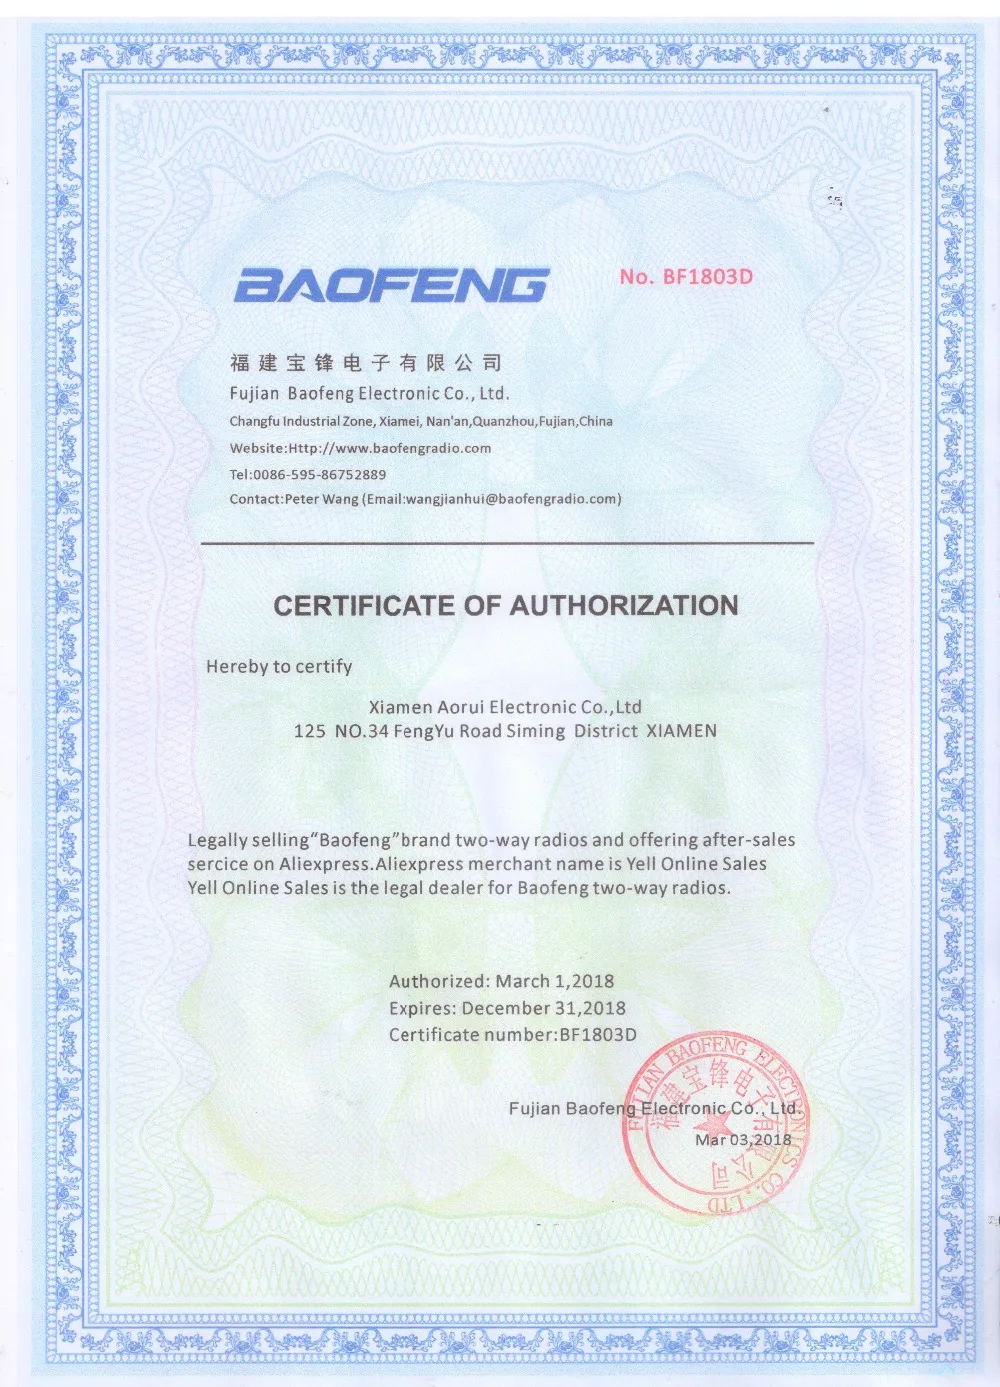 Baofeng DMR DM-1702 (gps) цифровая рация VHF UHF двухдиапазонный 136-174 и 400-470 МГц Dual Time слот Tier 1 & 2 двухстороннее радио